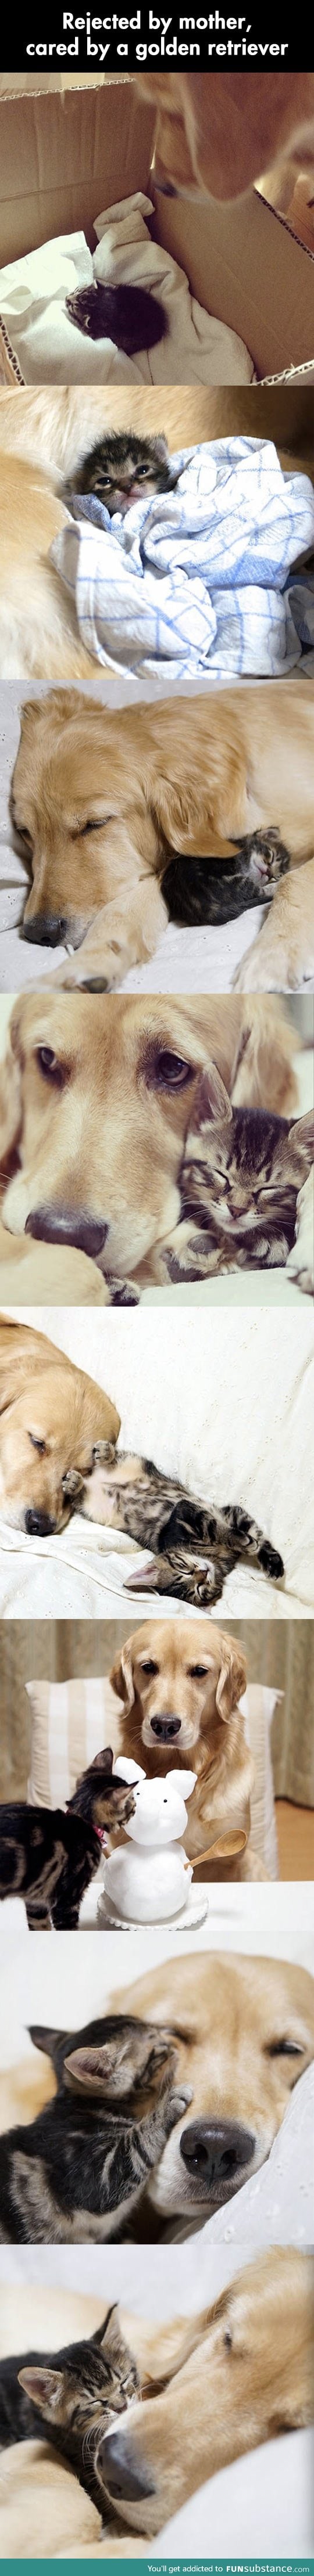 Touching photos of a dog adopting a kitten